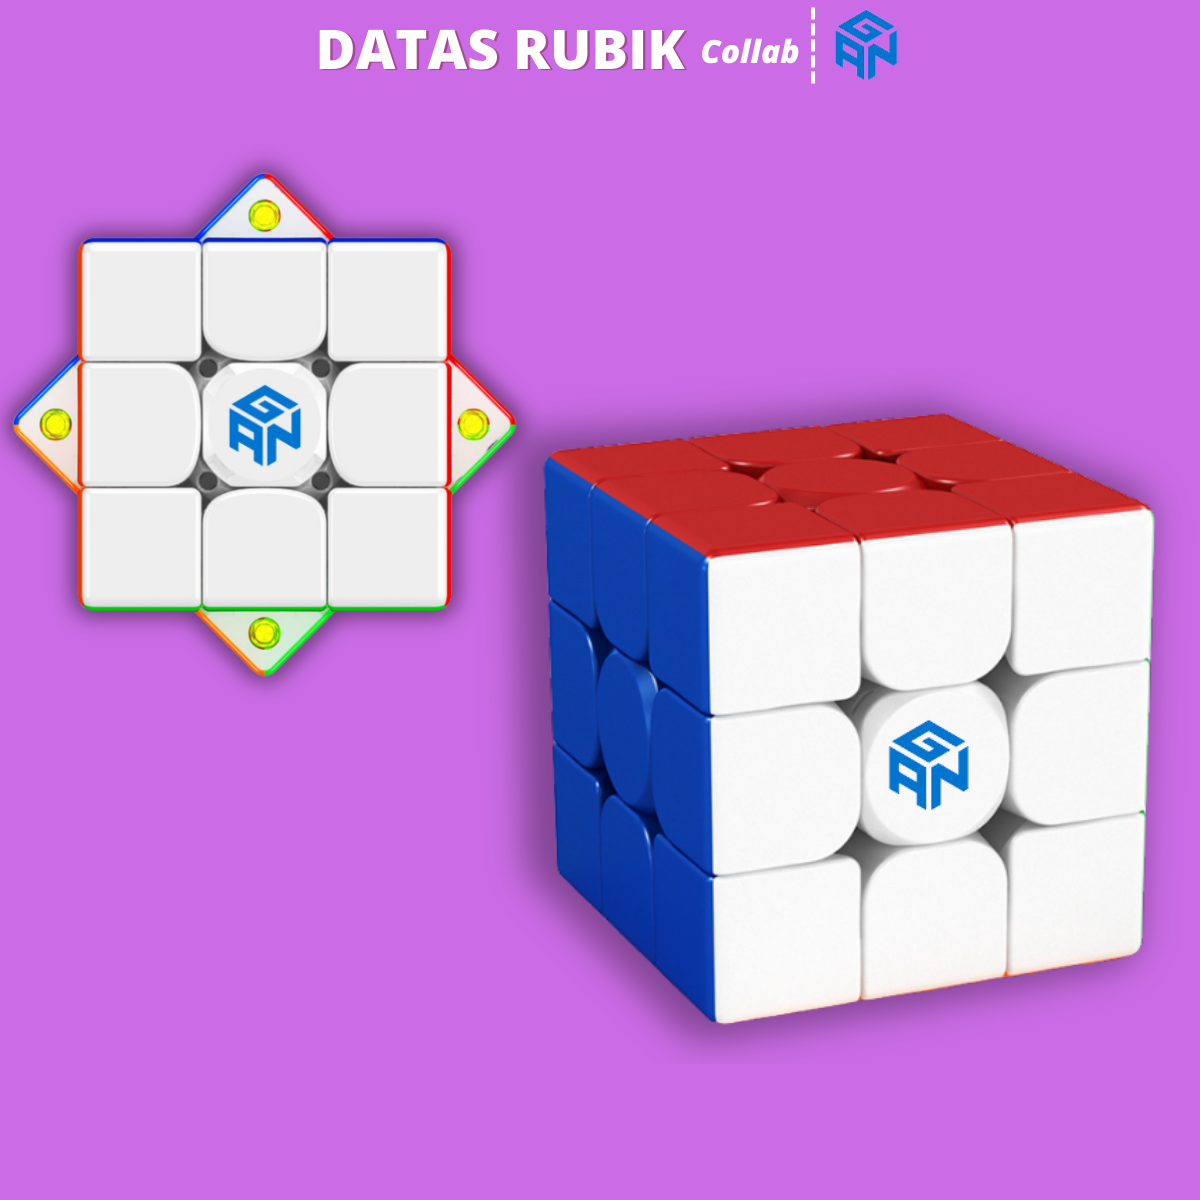 Khối Rubik Gan 3x3 DATAS Nam Châm Rubik 3x3x3 đồ chơi Rubik 3x3 Gan xoay siêu mượt